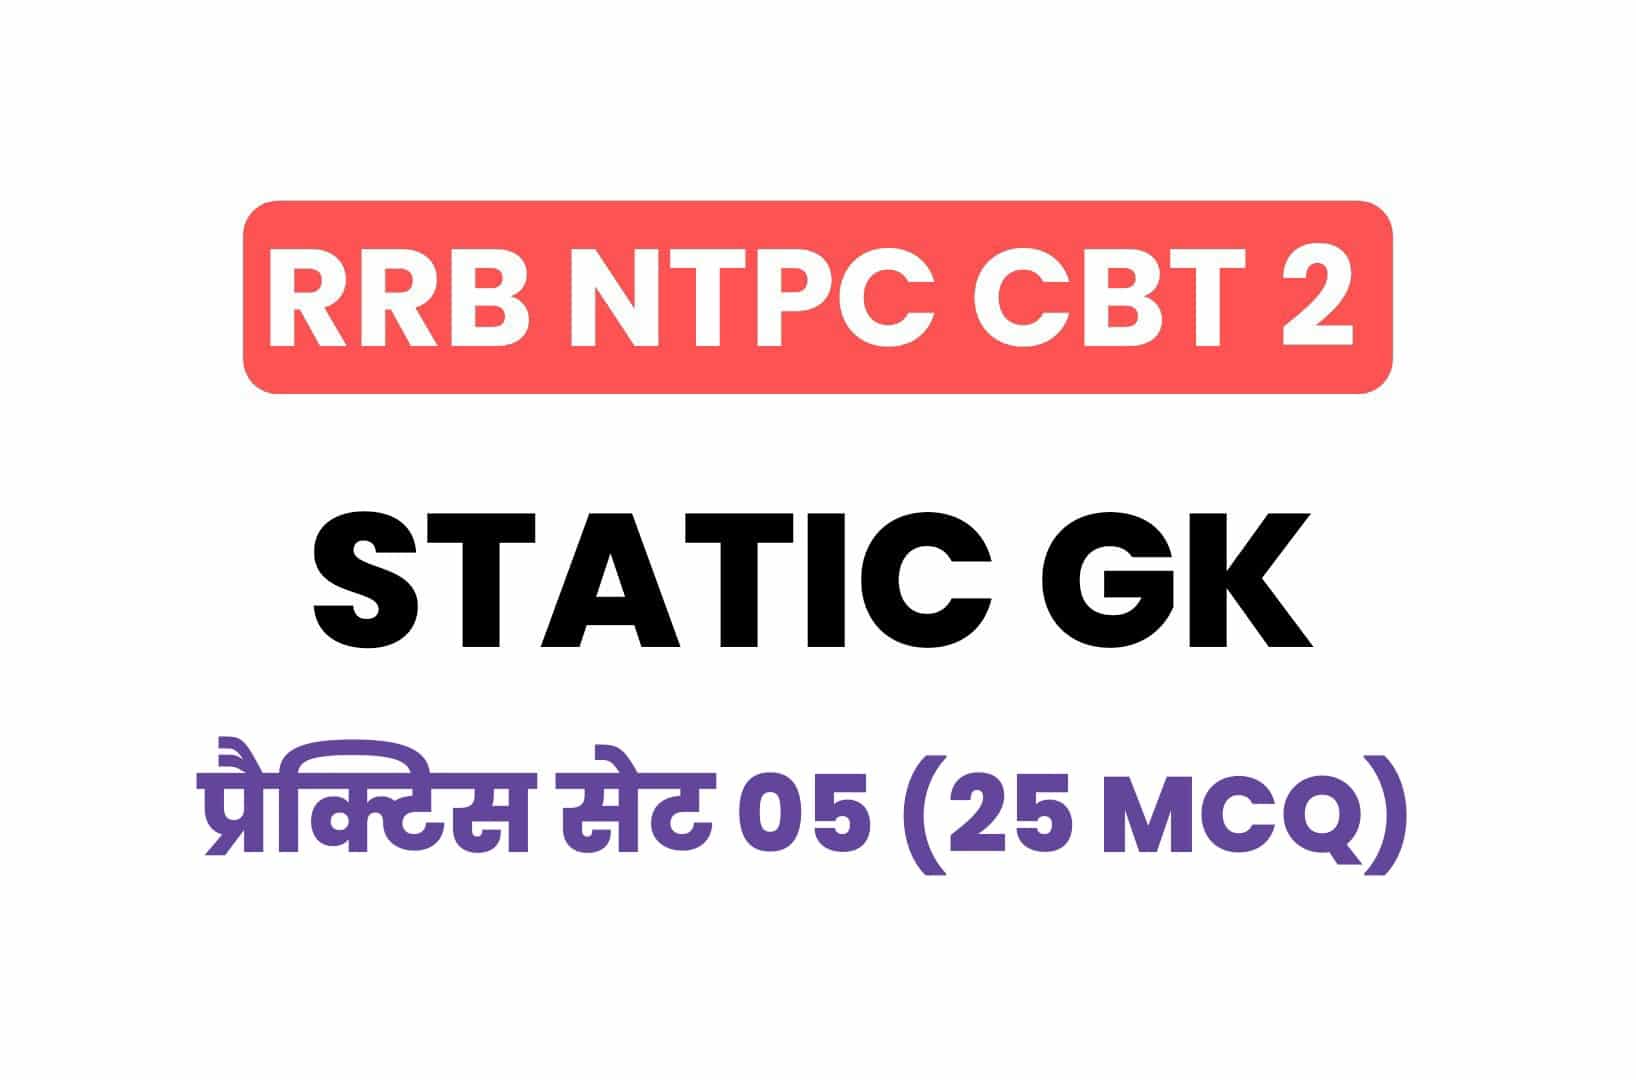 RRB NTPC CBT 2 Static GK प्रैक्टिस सेट 05: परीक्षा में पूछे जा सकते हैं इस प्रकार के प्रश्न, देखें